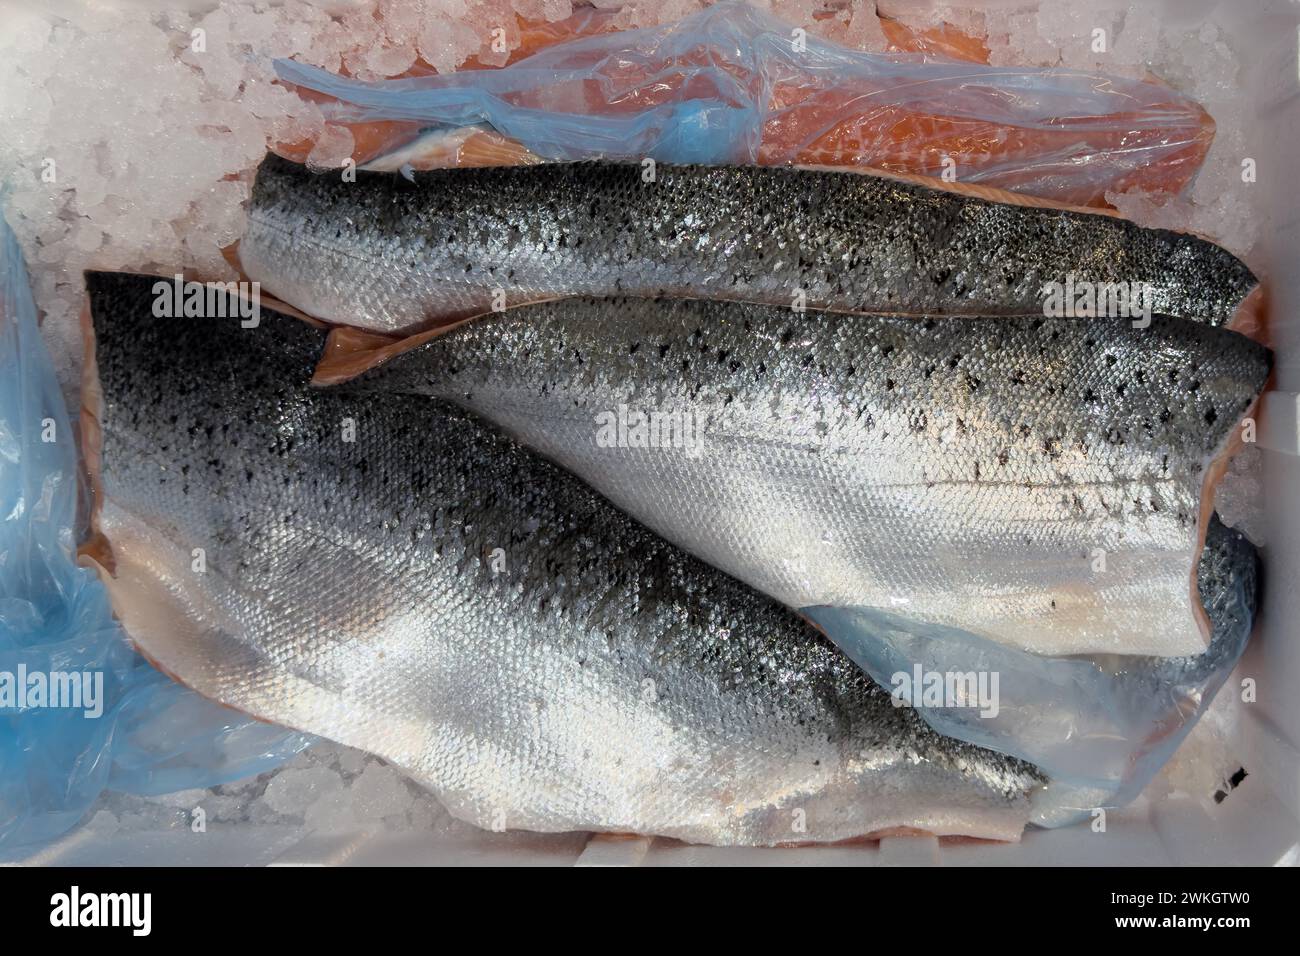 Salmone dell'Atlantico (Salmo salar) su ghiaccio in bancone refrigerato bancone di pesce commercializzato al dettaglio, commercio di alimenti, commercio all'ingrosso, commercio di pesce, specialità Foto Stock